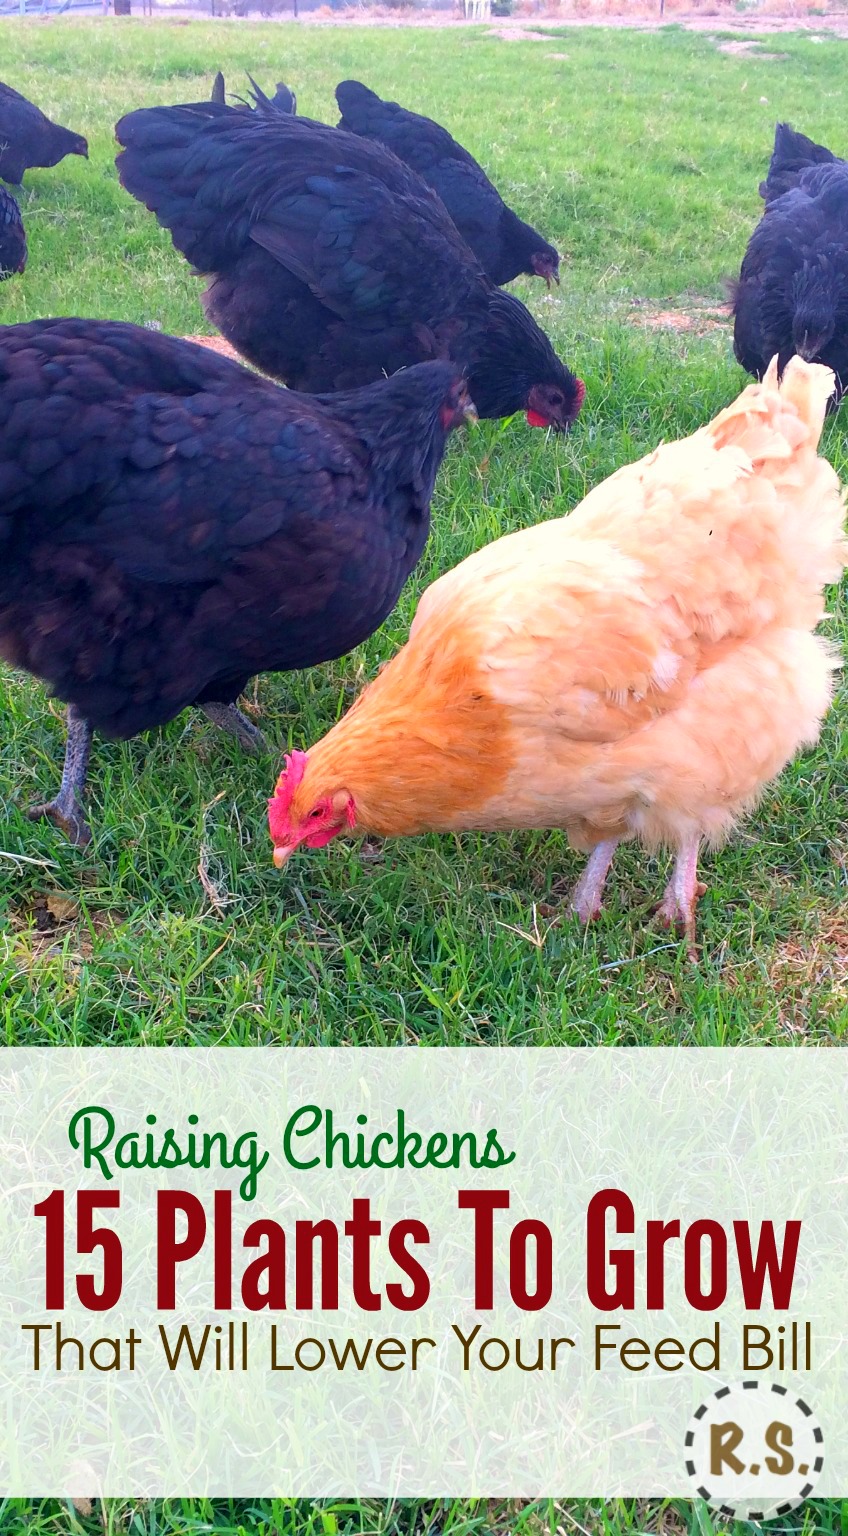 cultive sua comida de frango no quintal em um jardim de permacultura perene DIY. Sombra de comida grátis para as galinhas no paisagismo comestível bem fora de seu galinheiro. Cultivar comida de frango economizará dinheiro.